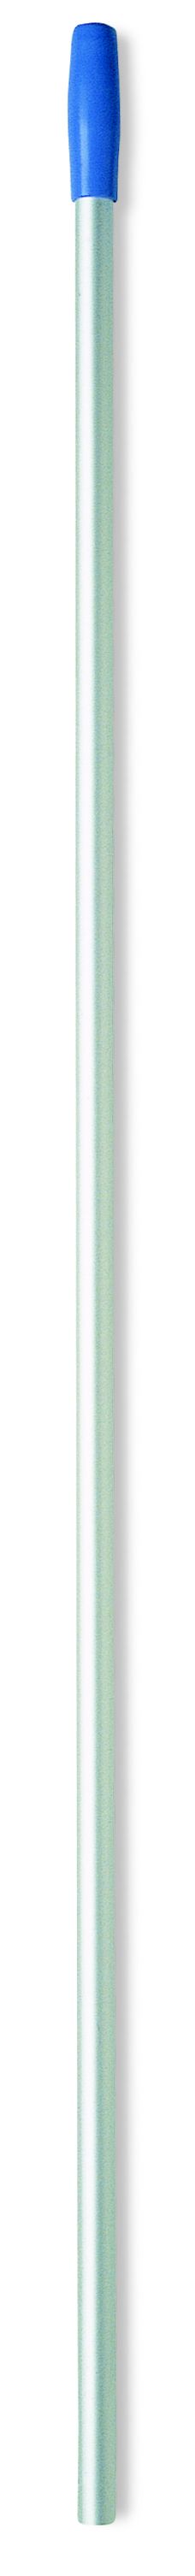 Euromop алюминиевая рукоятка для держателя мопа, с отверстиями, д23см x 140см, синяя рукоятка